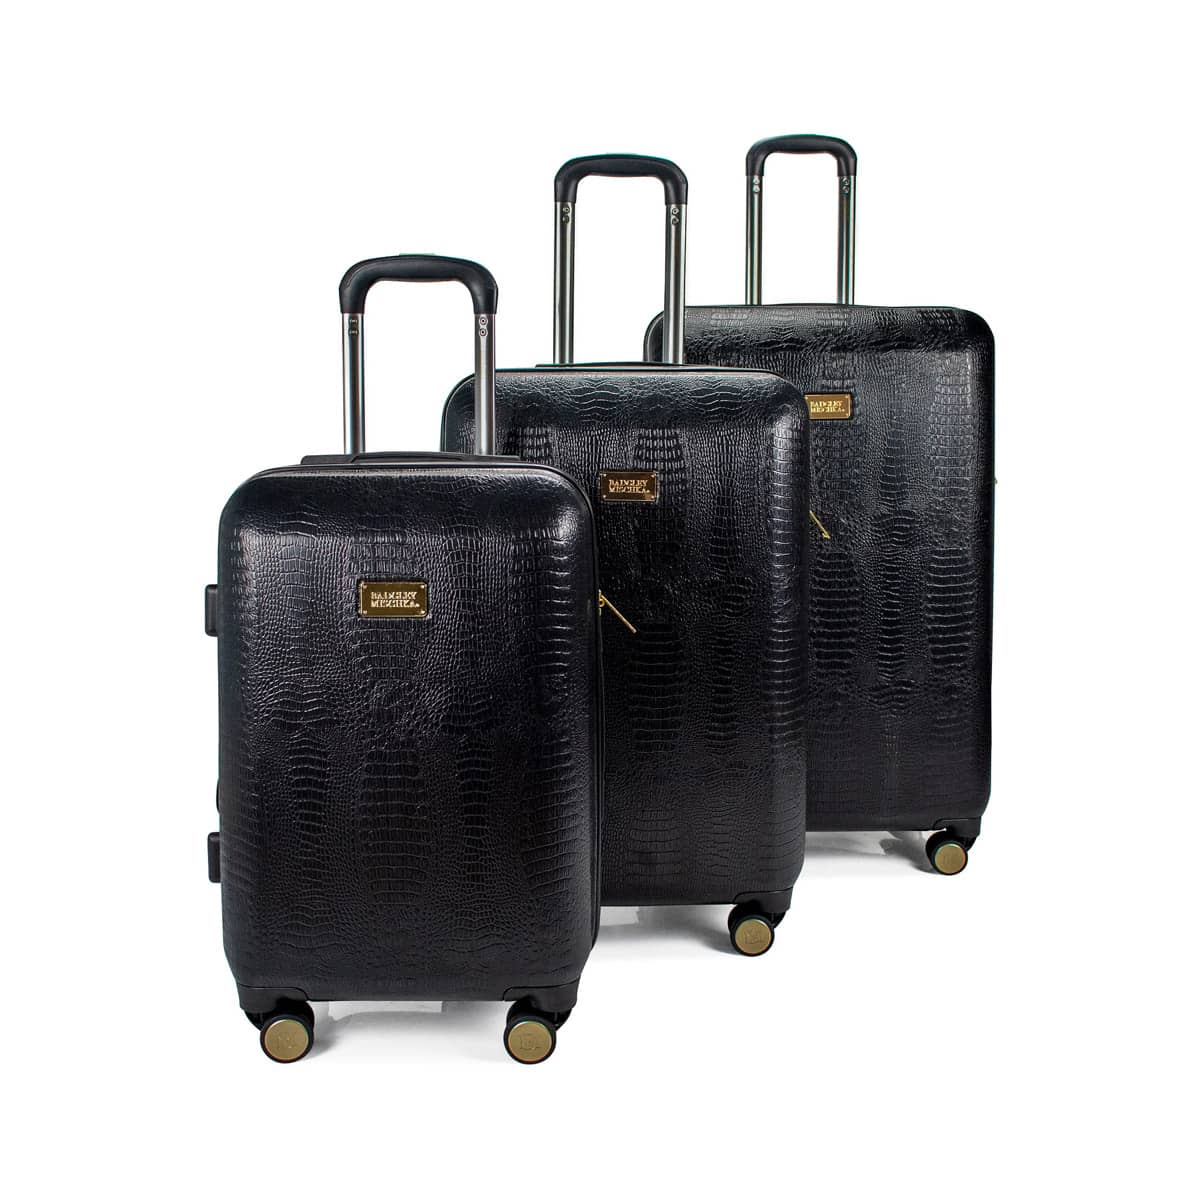 Snakeskin Luggage Set